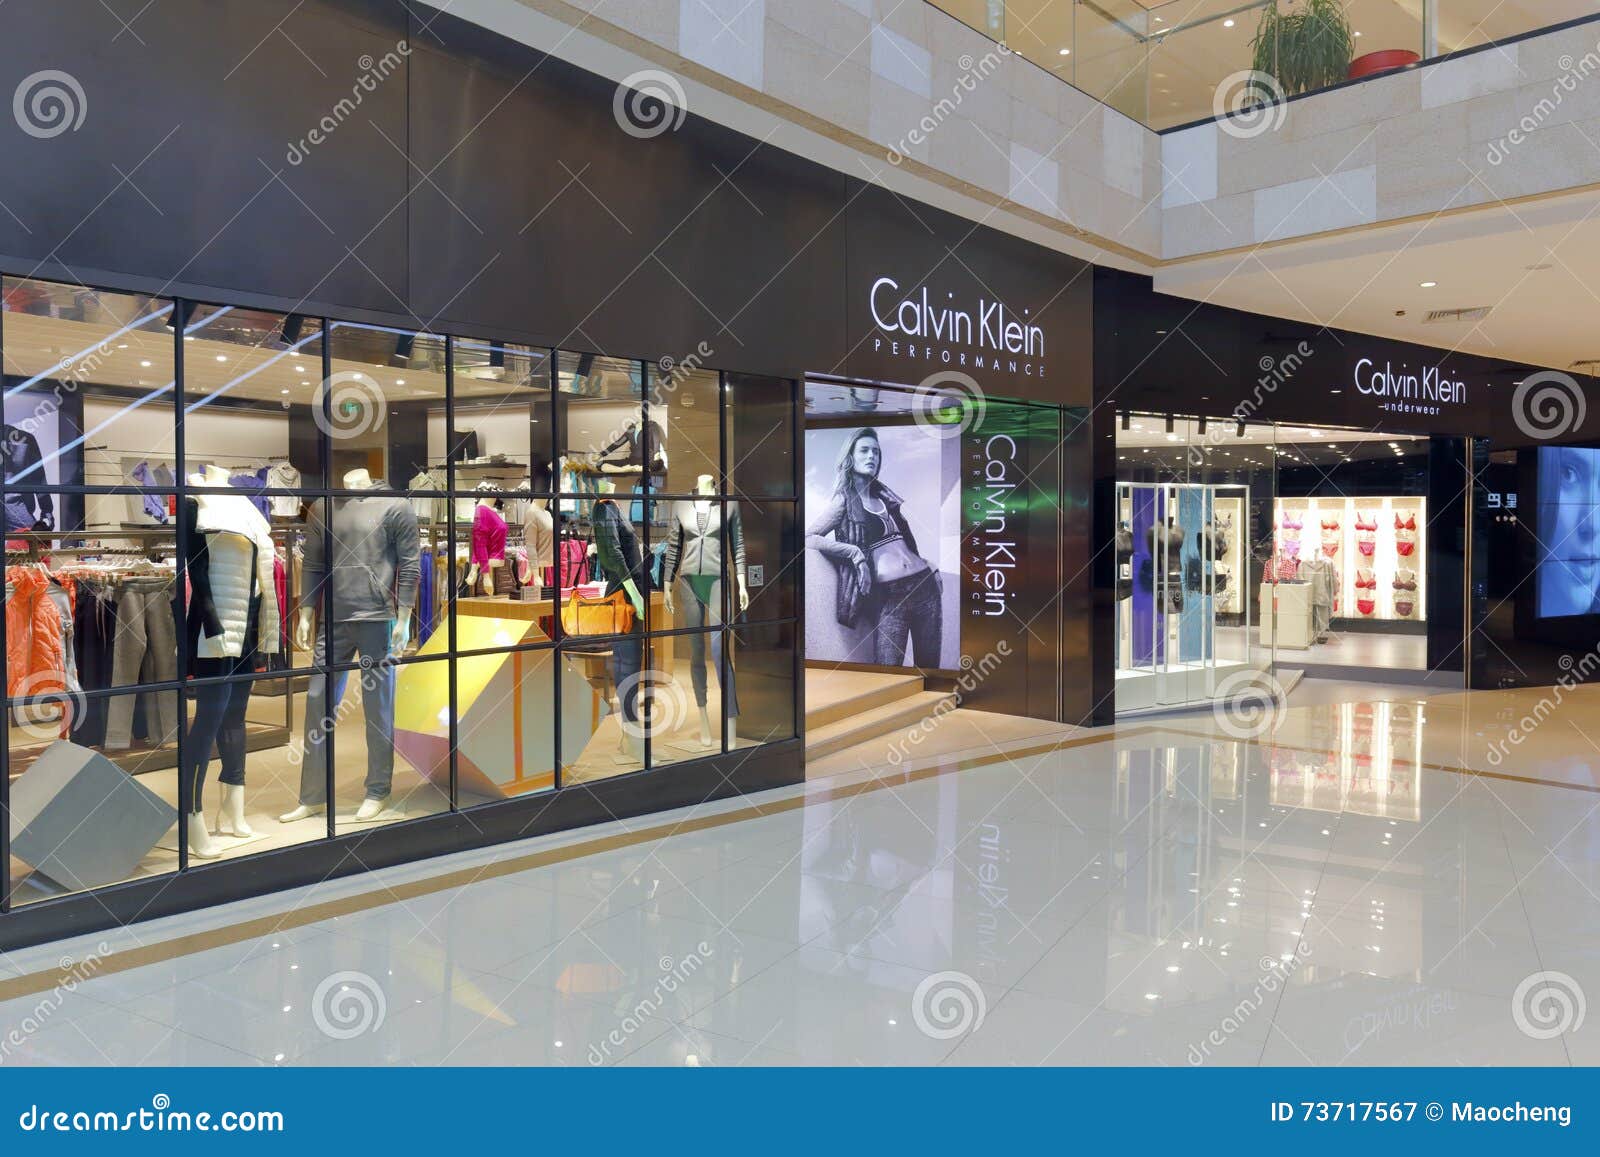 Facade of Calvin Klein Clothing Shop Editorial Photography - Image of ...